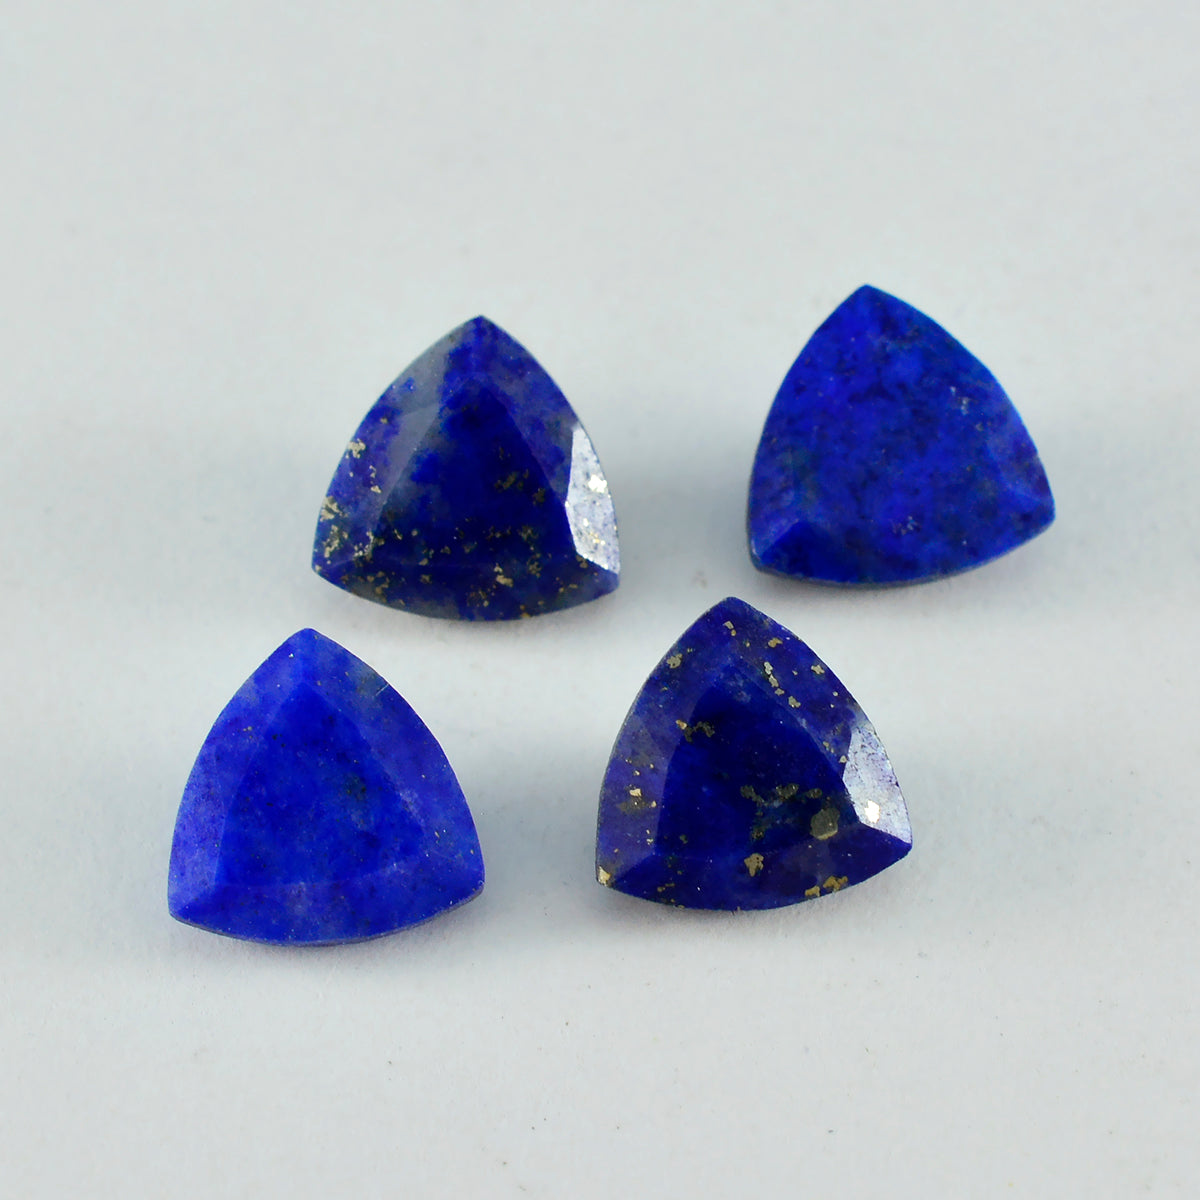 Riyogems 1 Stück natürlicher blauer Lapislazuli, facettiert, 14 x 14 mm, Billionenform, A+1-Qualität, loser Edelstein